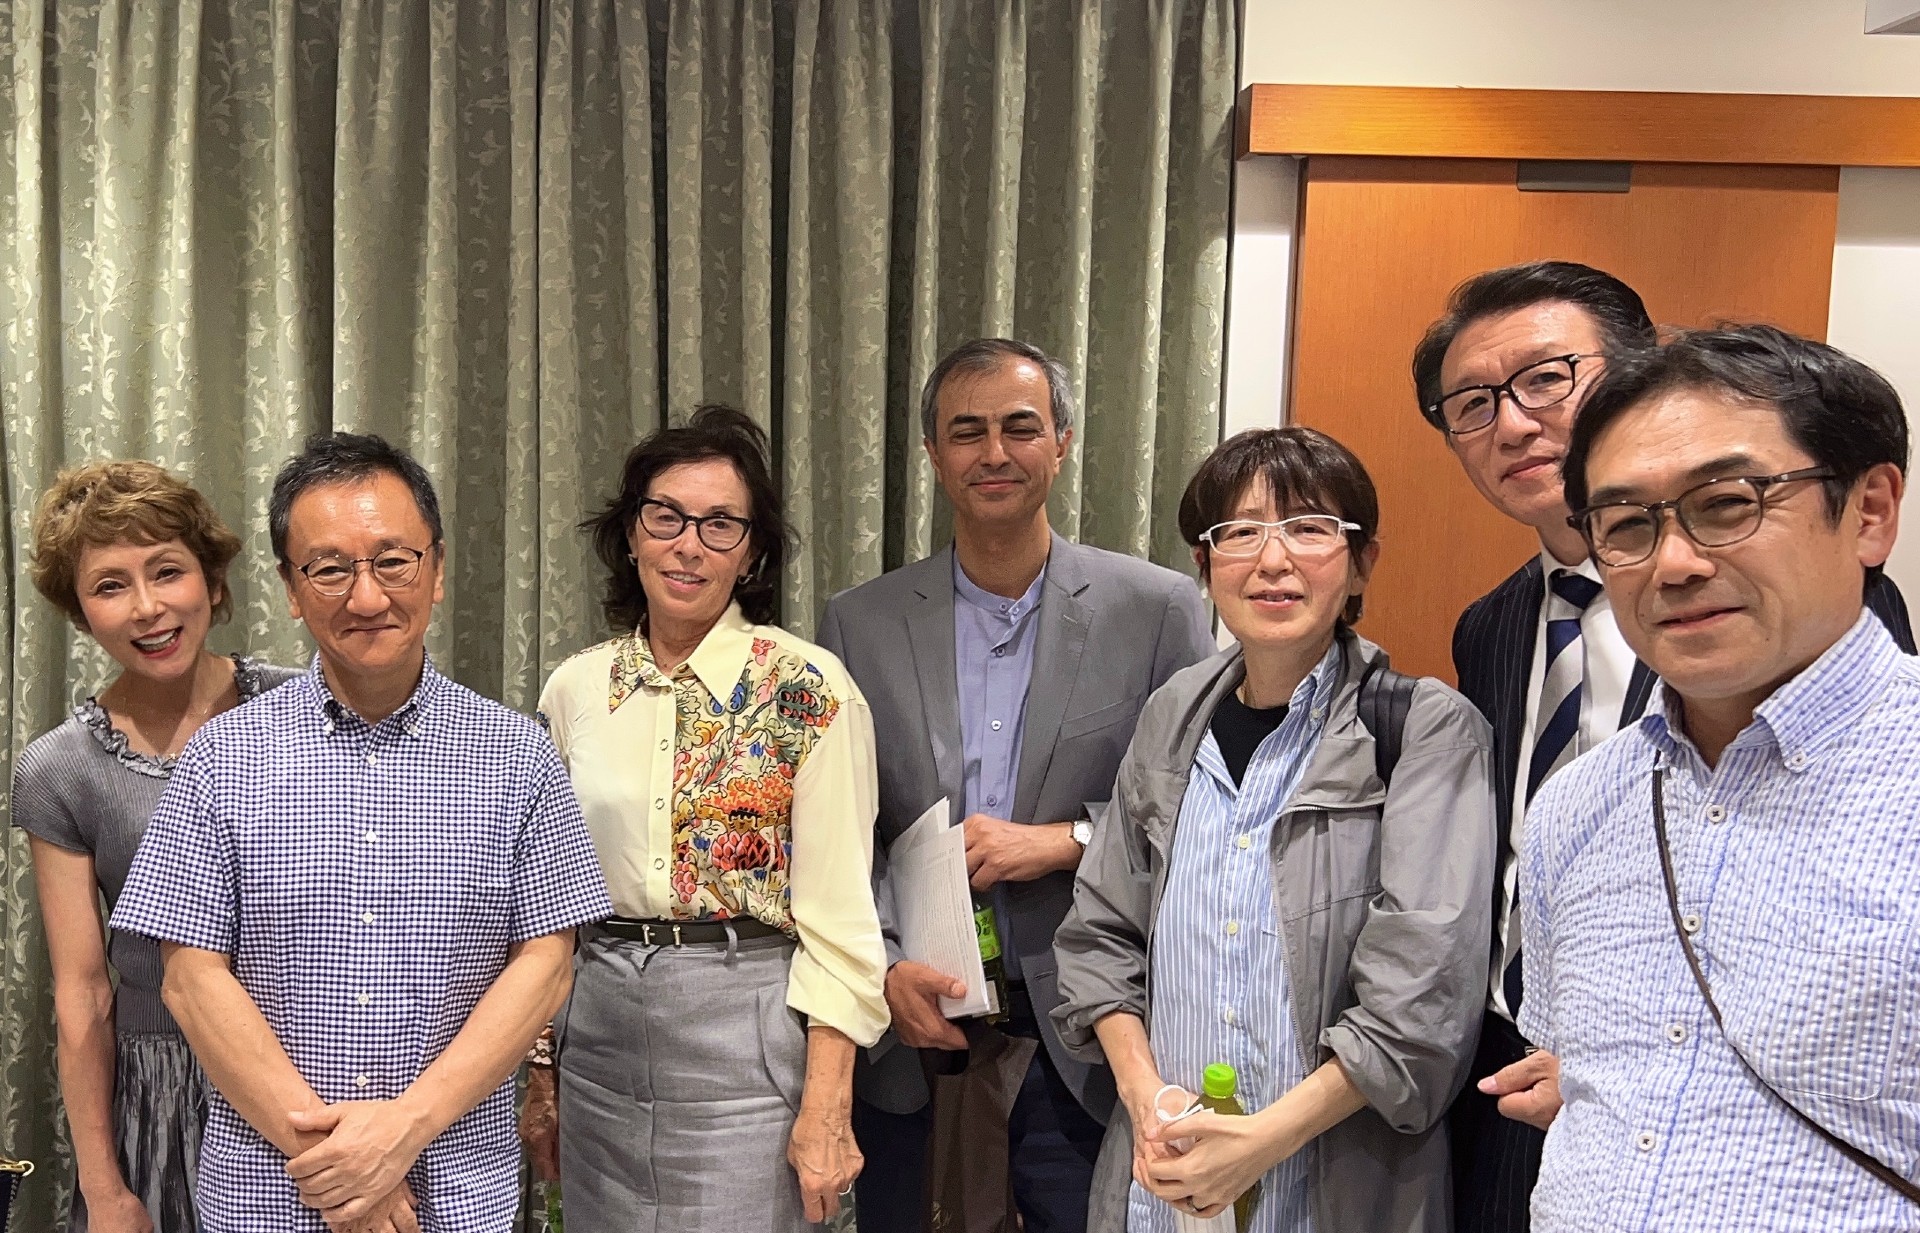 セッションメンバー。左から、富田百香、竹内先生、ベラCEO、ムハンマド博士、IPP関連の方々。